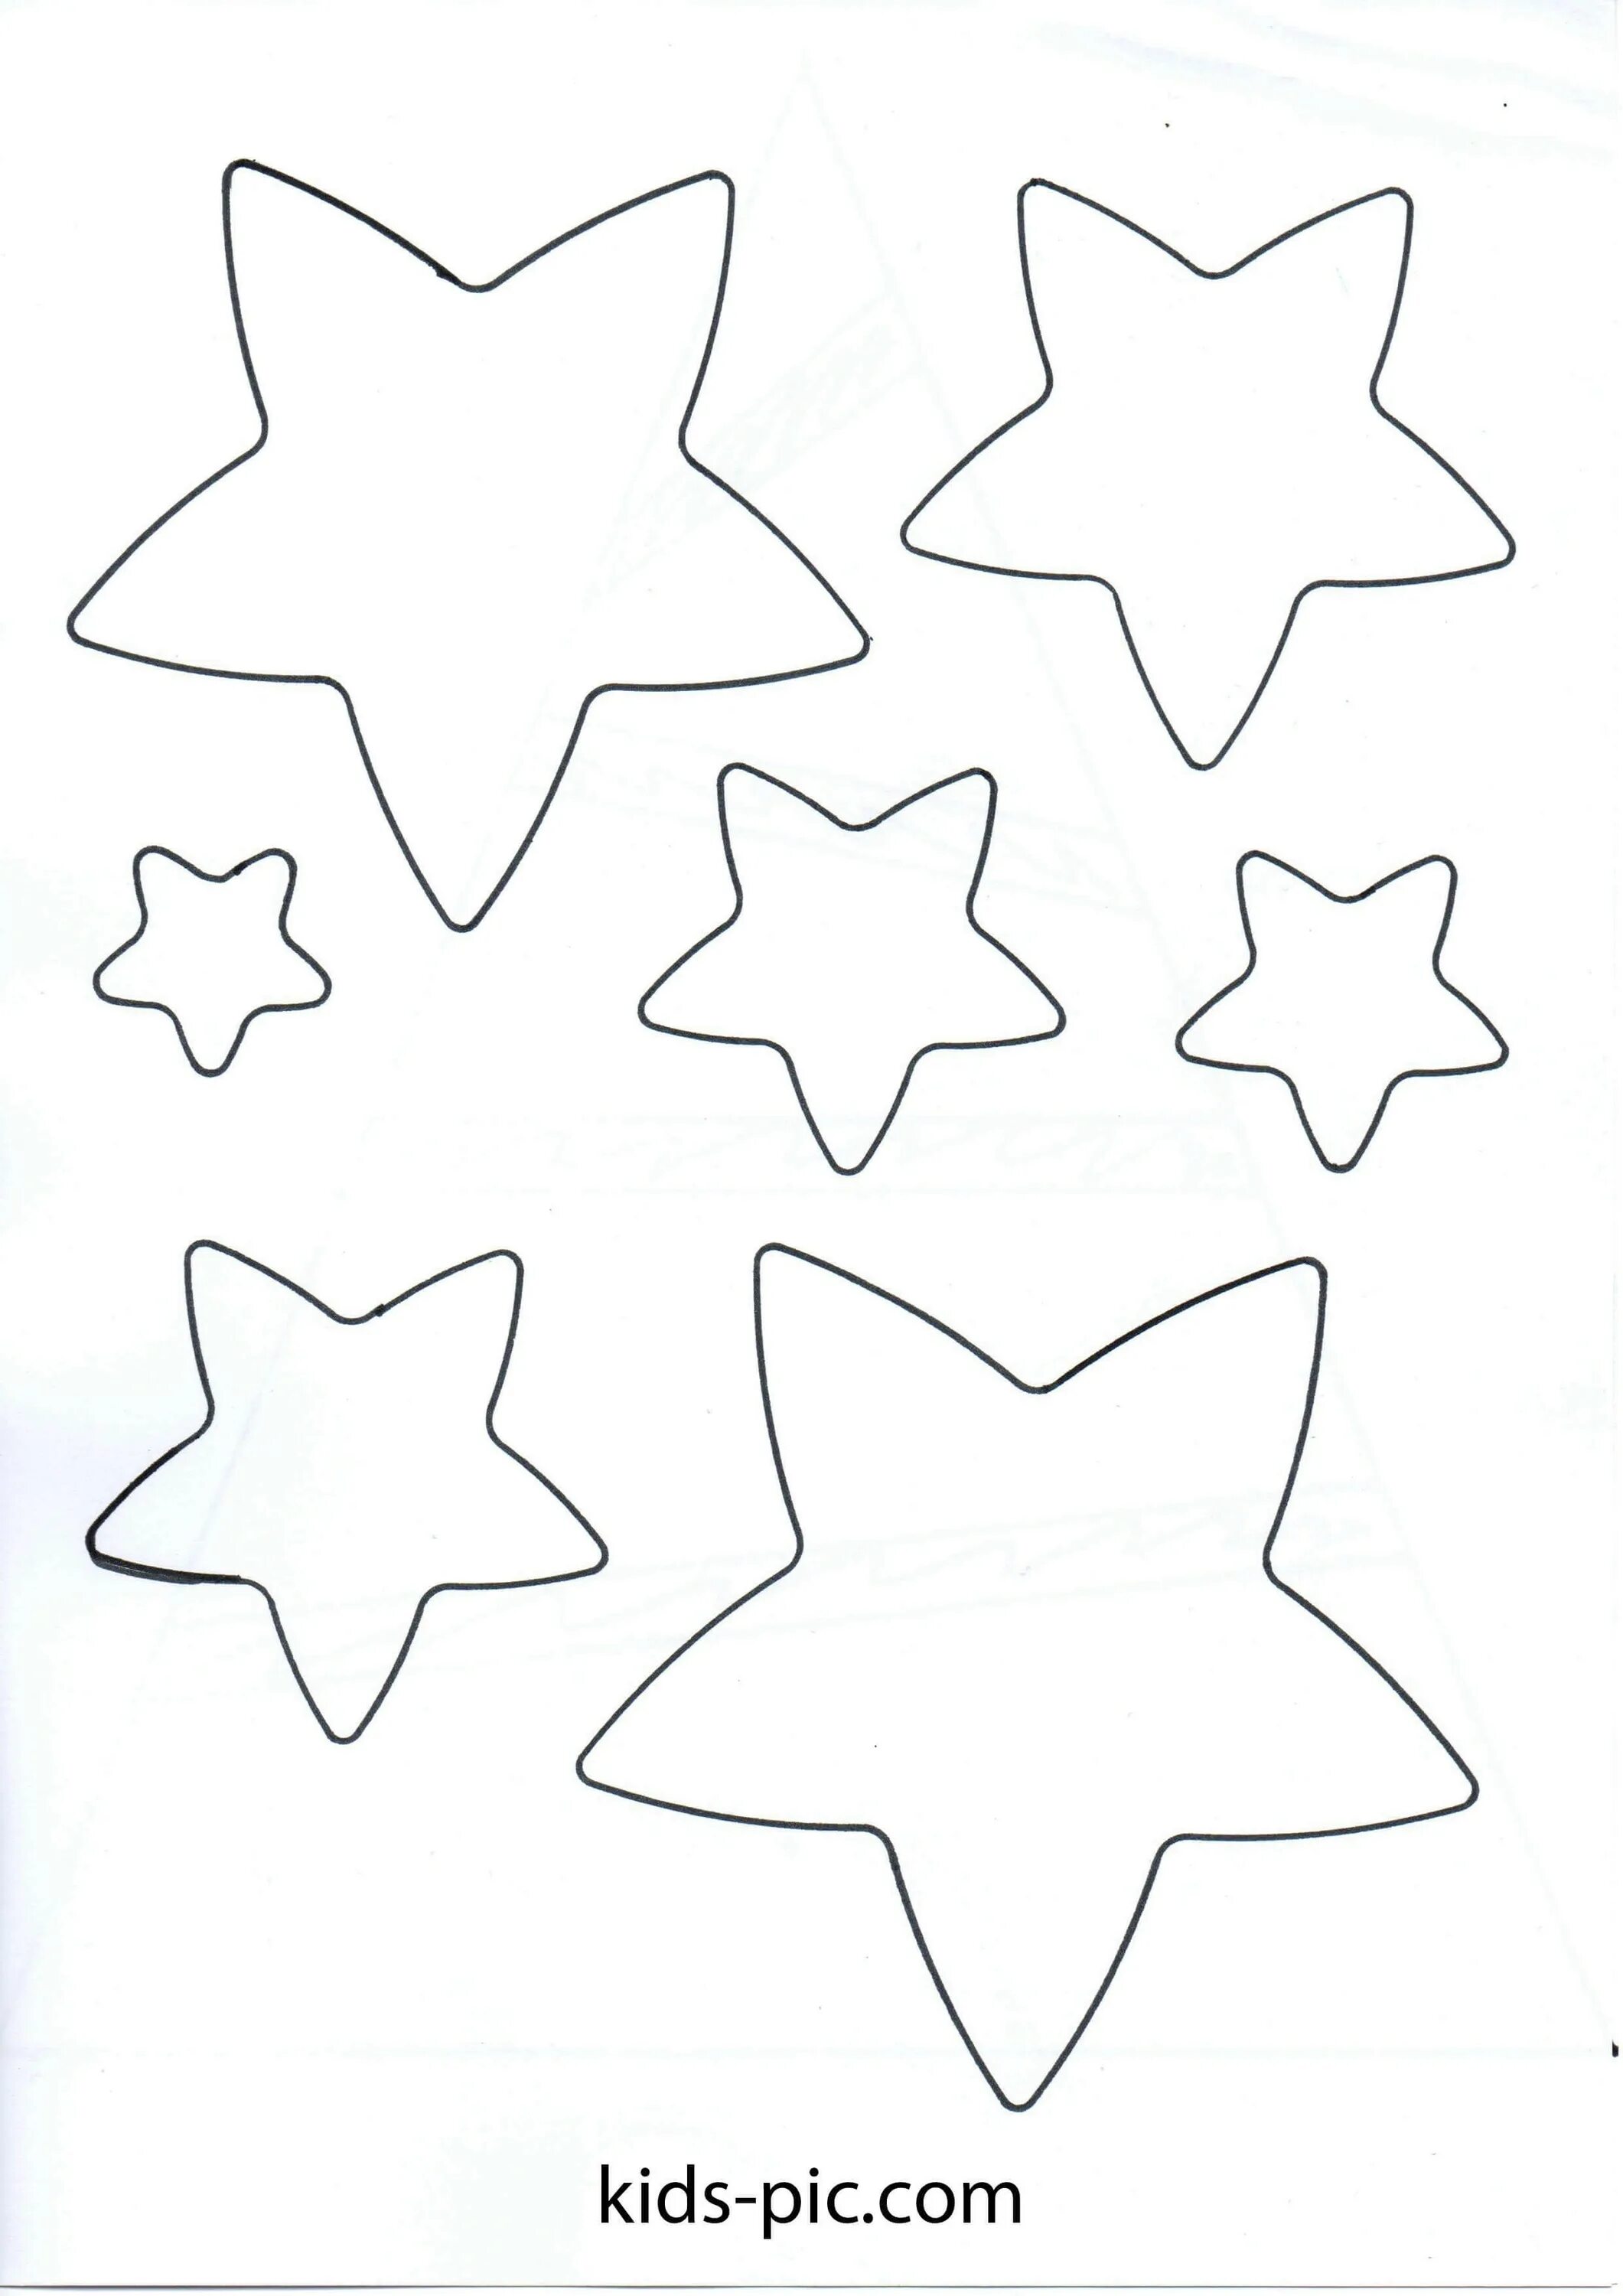 Звезды шаблоны для вырезания из бумаги. Звезда шаблон. Трафарет звезды. Звёздочки трафареты для вырезания. Новогодние звездочки трафареты.